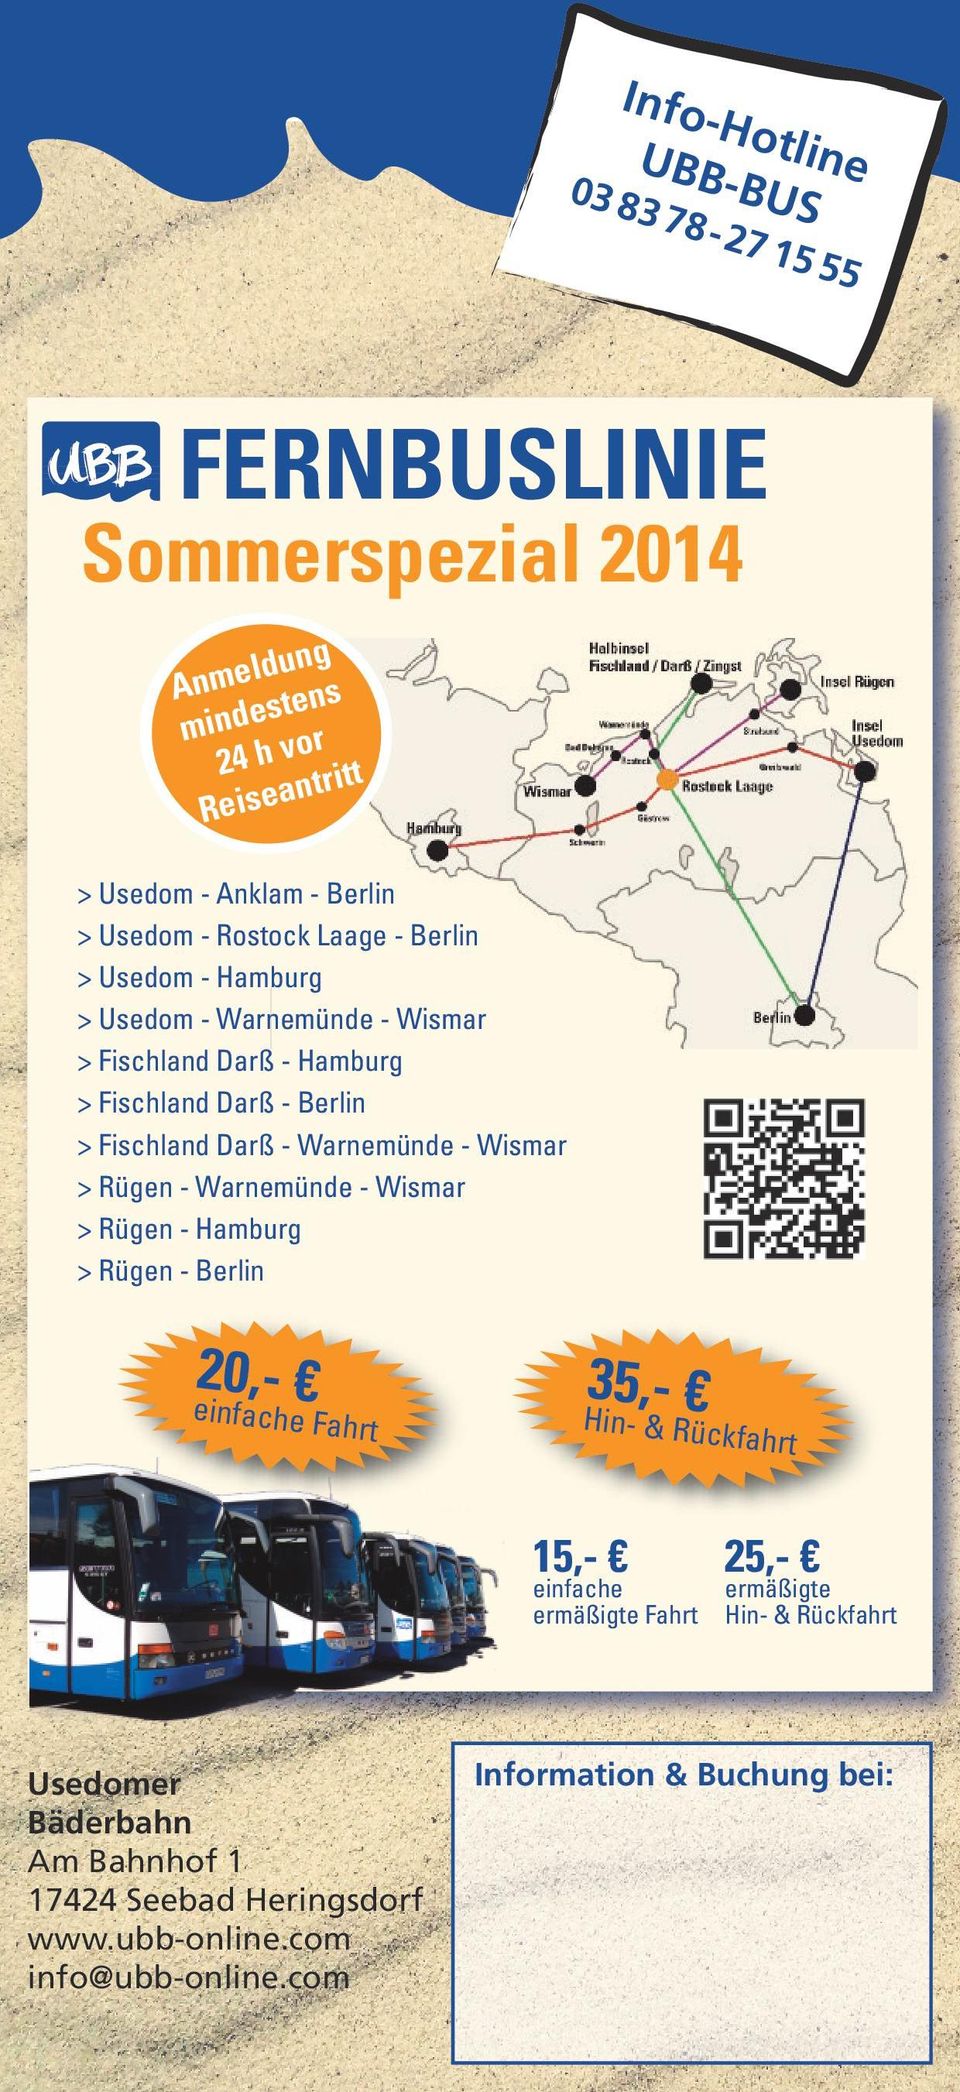 Fischland Darß - Warnemünde - Wismar > - Warnemünde - Wismar > - Hamburg > - Berlin 20,- einfache Fa hrt 35,- Hin- & Rüc 15,- einfache ermäßigte Fahrt